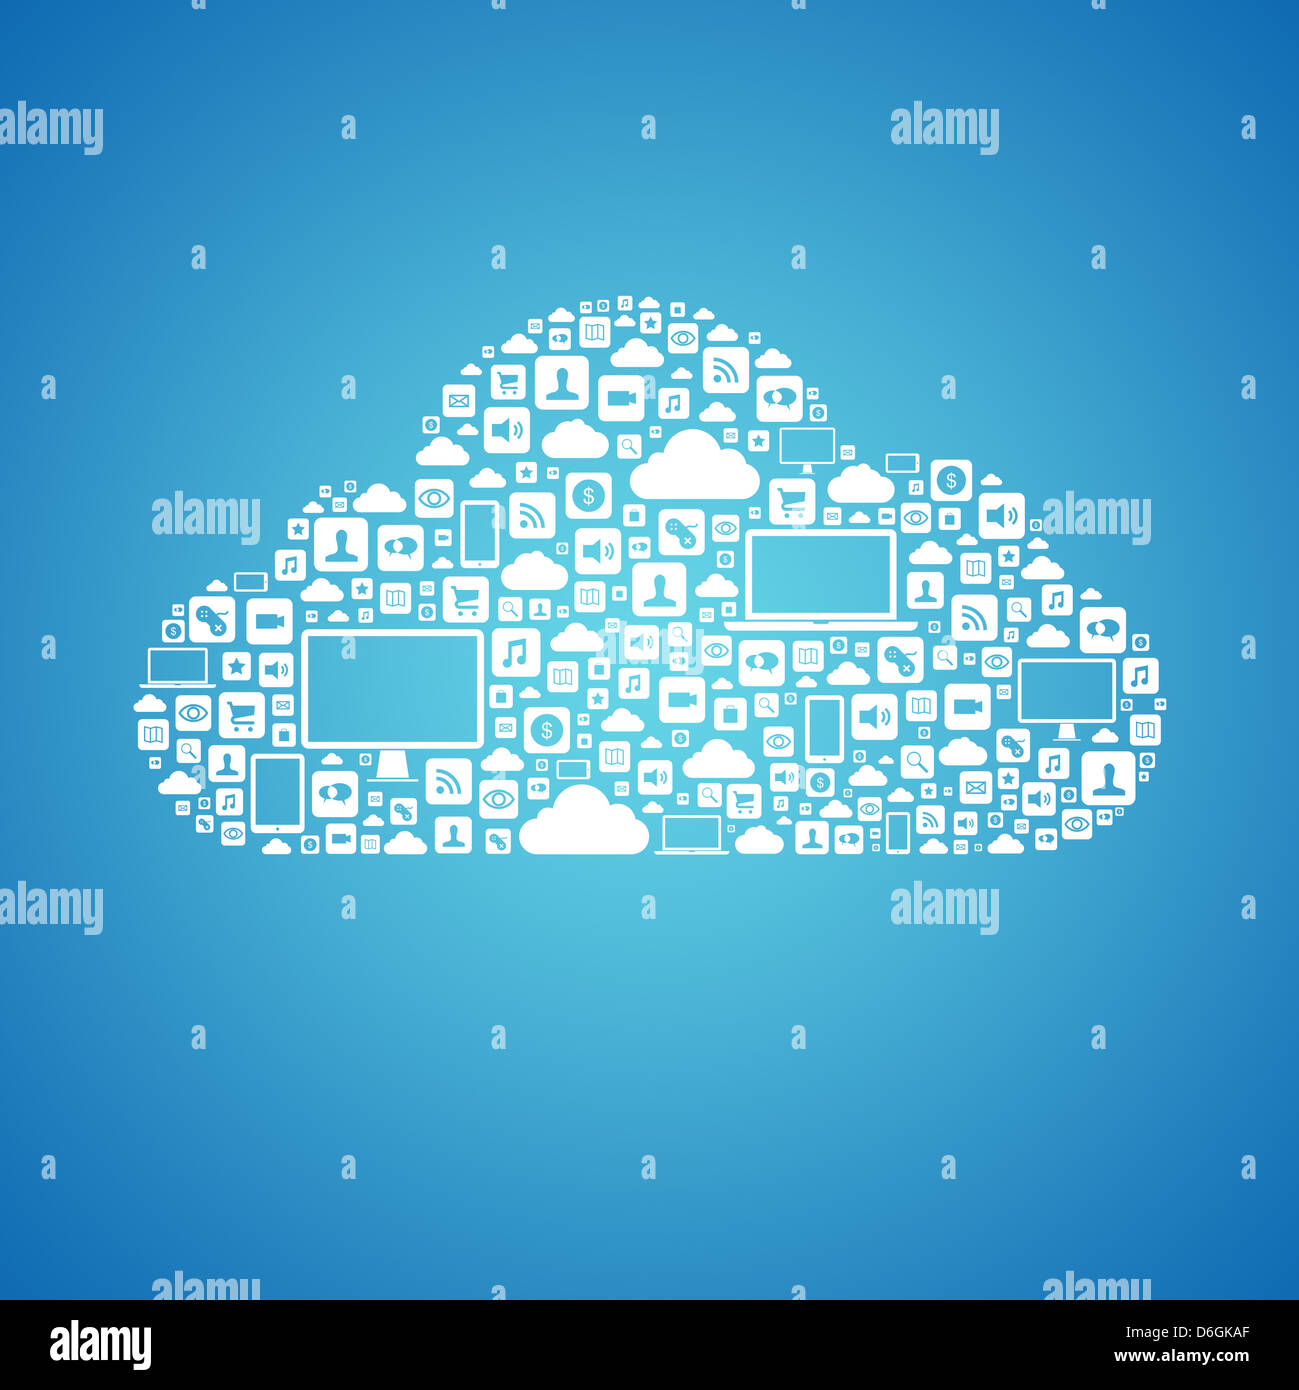 Concept abstrait du cloud computing avec beaucoup d'icônes graphiques qui forment un nuage. Isolé sur fond bleu Banque D'Images